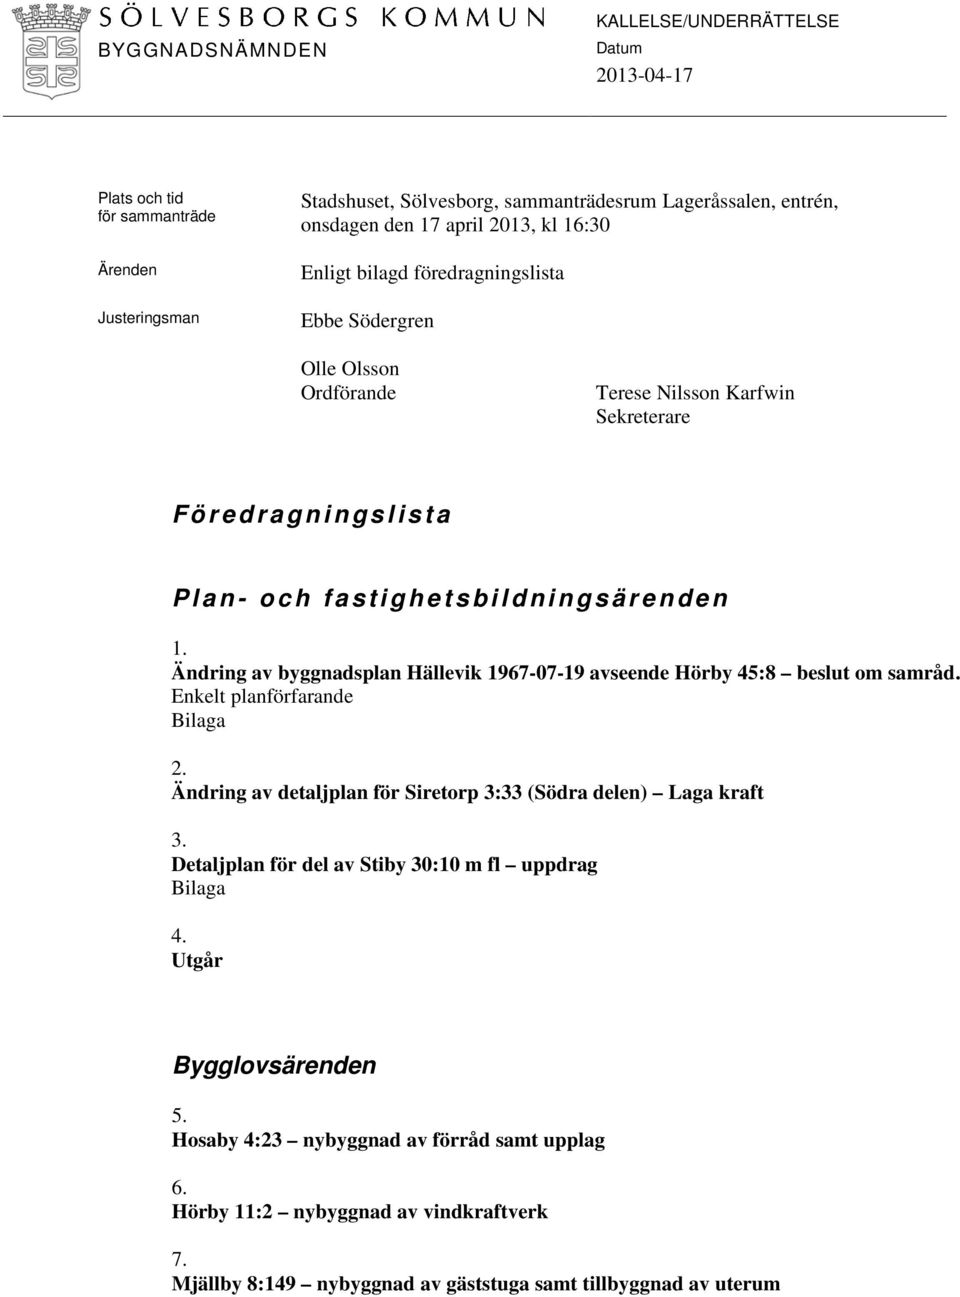 Ändring av byggnadsplan Hällevik 1967-07-19 avseende Hörby 45:8 beslut om samråd. Enkelt planförfarande Bilaga 2. Ändring av detaljplan för Siretorp 3:33 (Södra delen) Laga kraft 3.